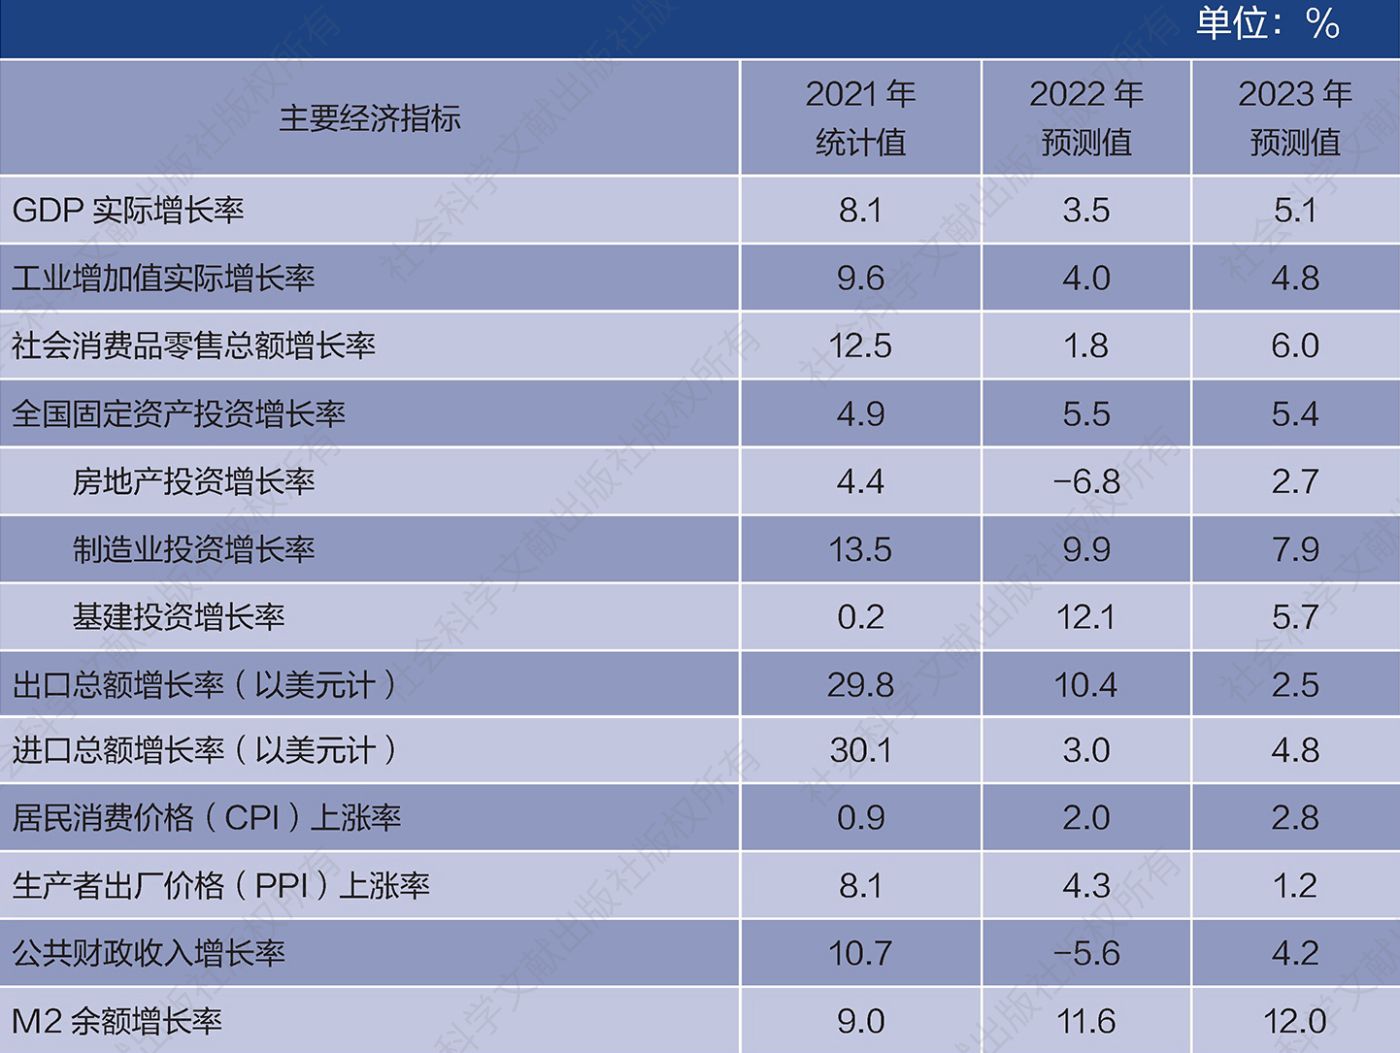 表1 2022～2023年中国经济主要指标预测